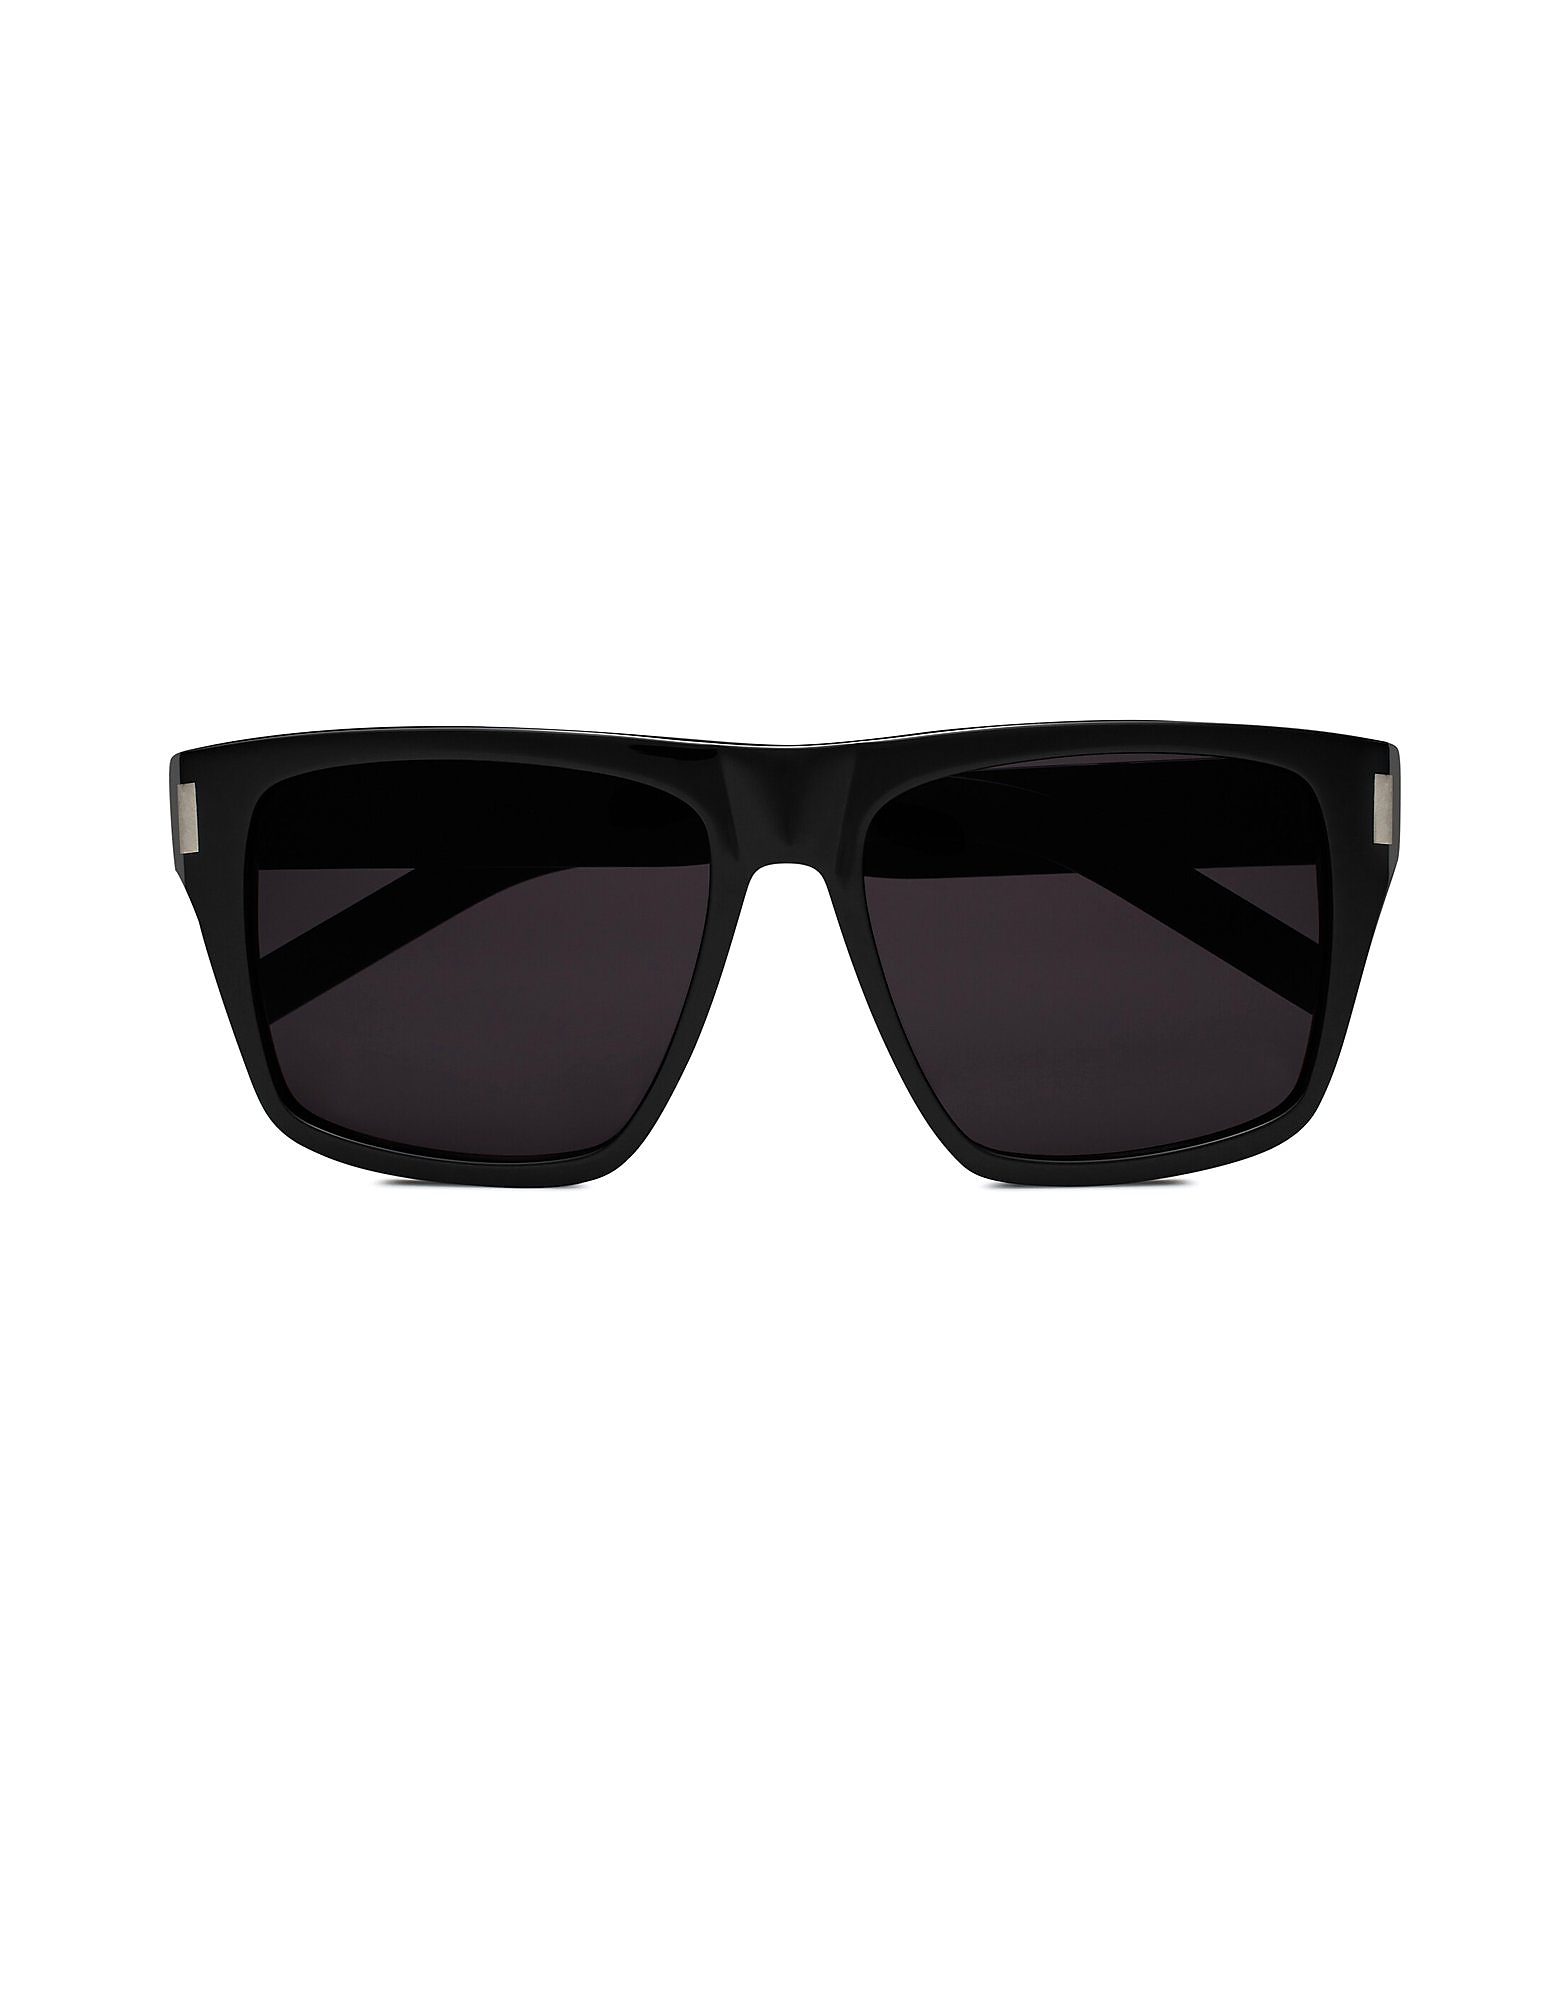 Saint Laurent Sunglasses Black Acetate Unisex Sunglasses